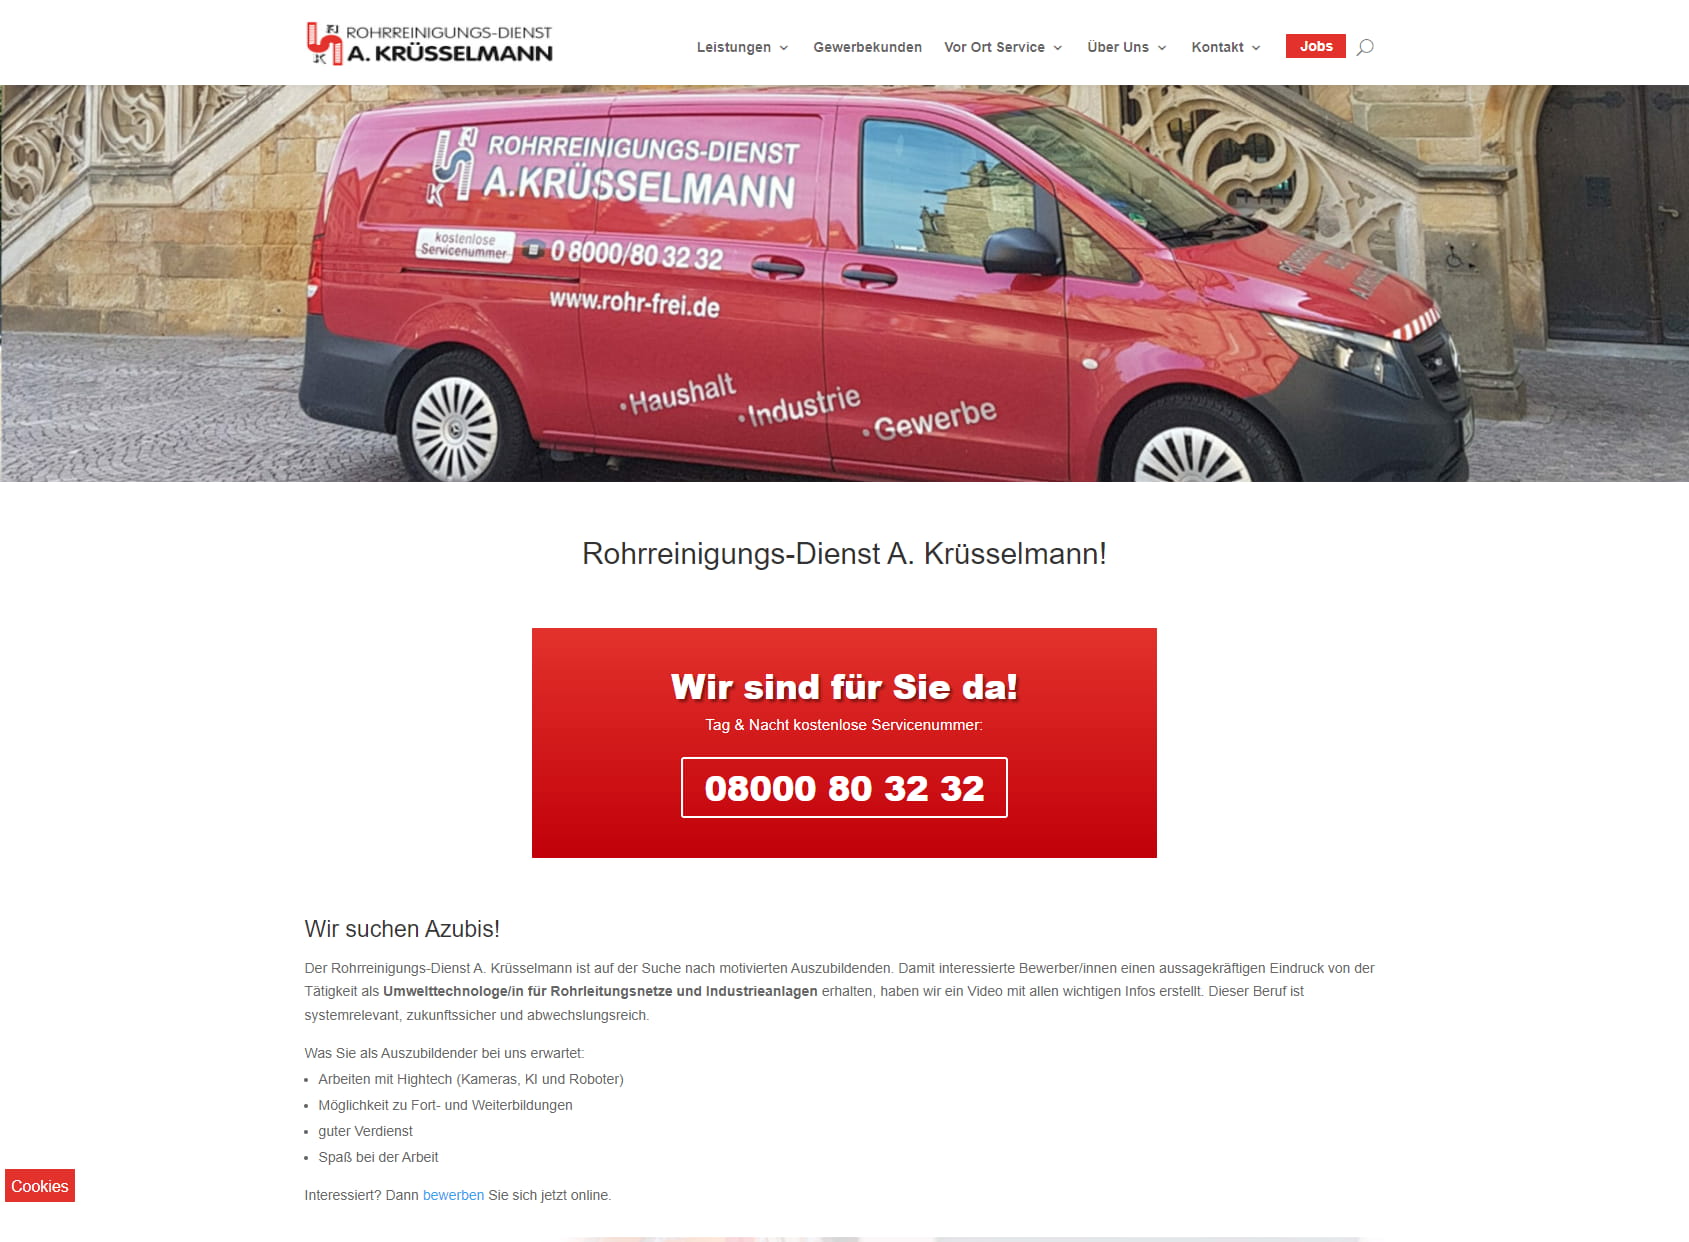 Rohrreinigungs-Dienst A. Krüsselmann GmbH